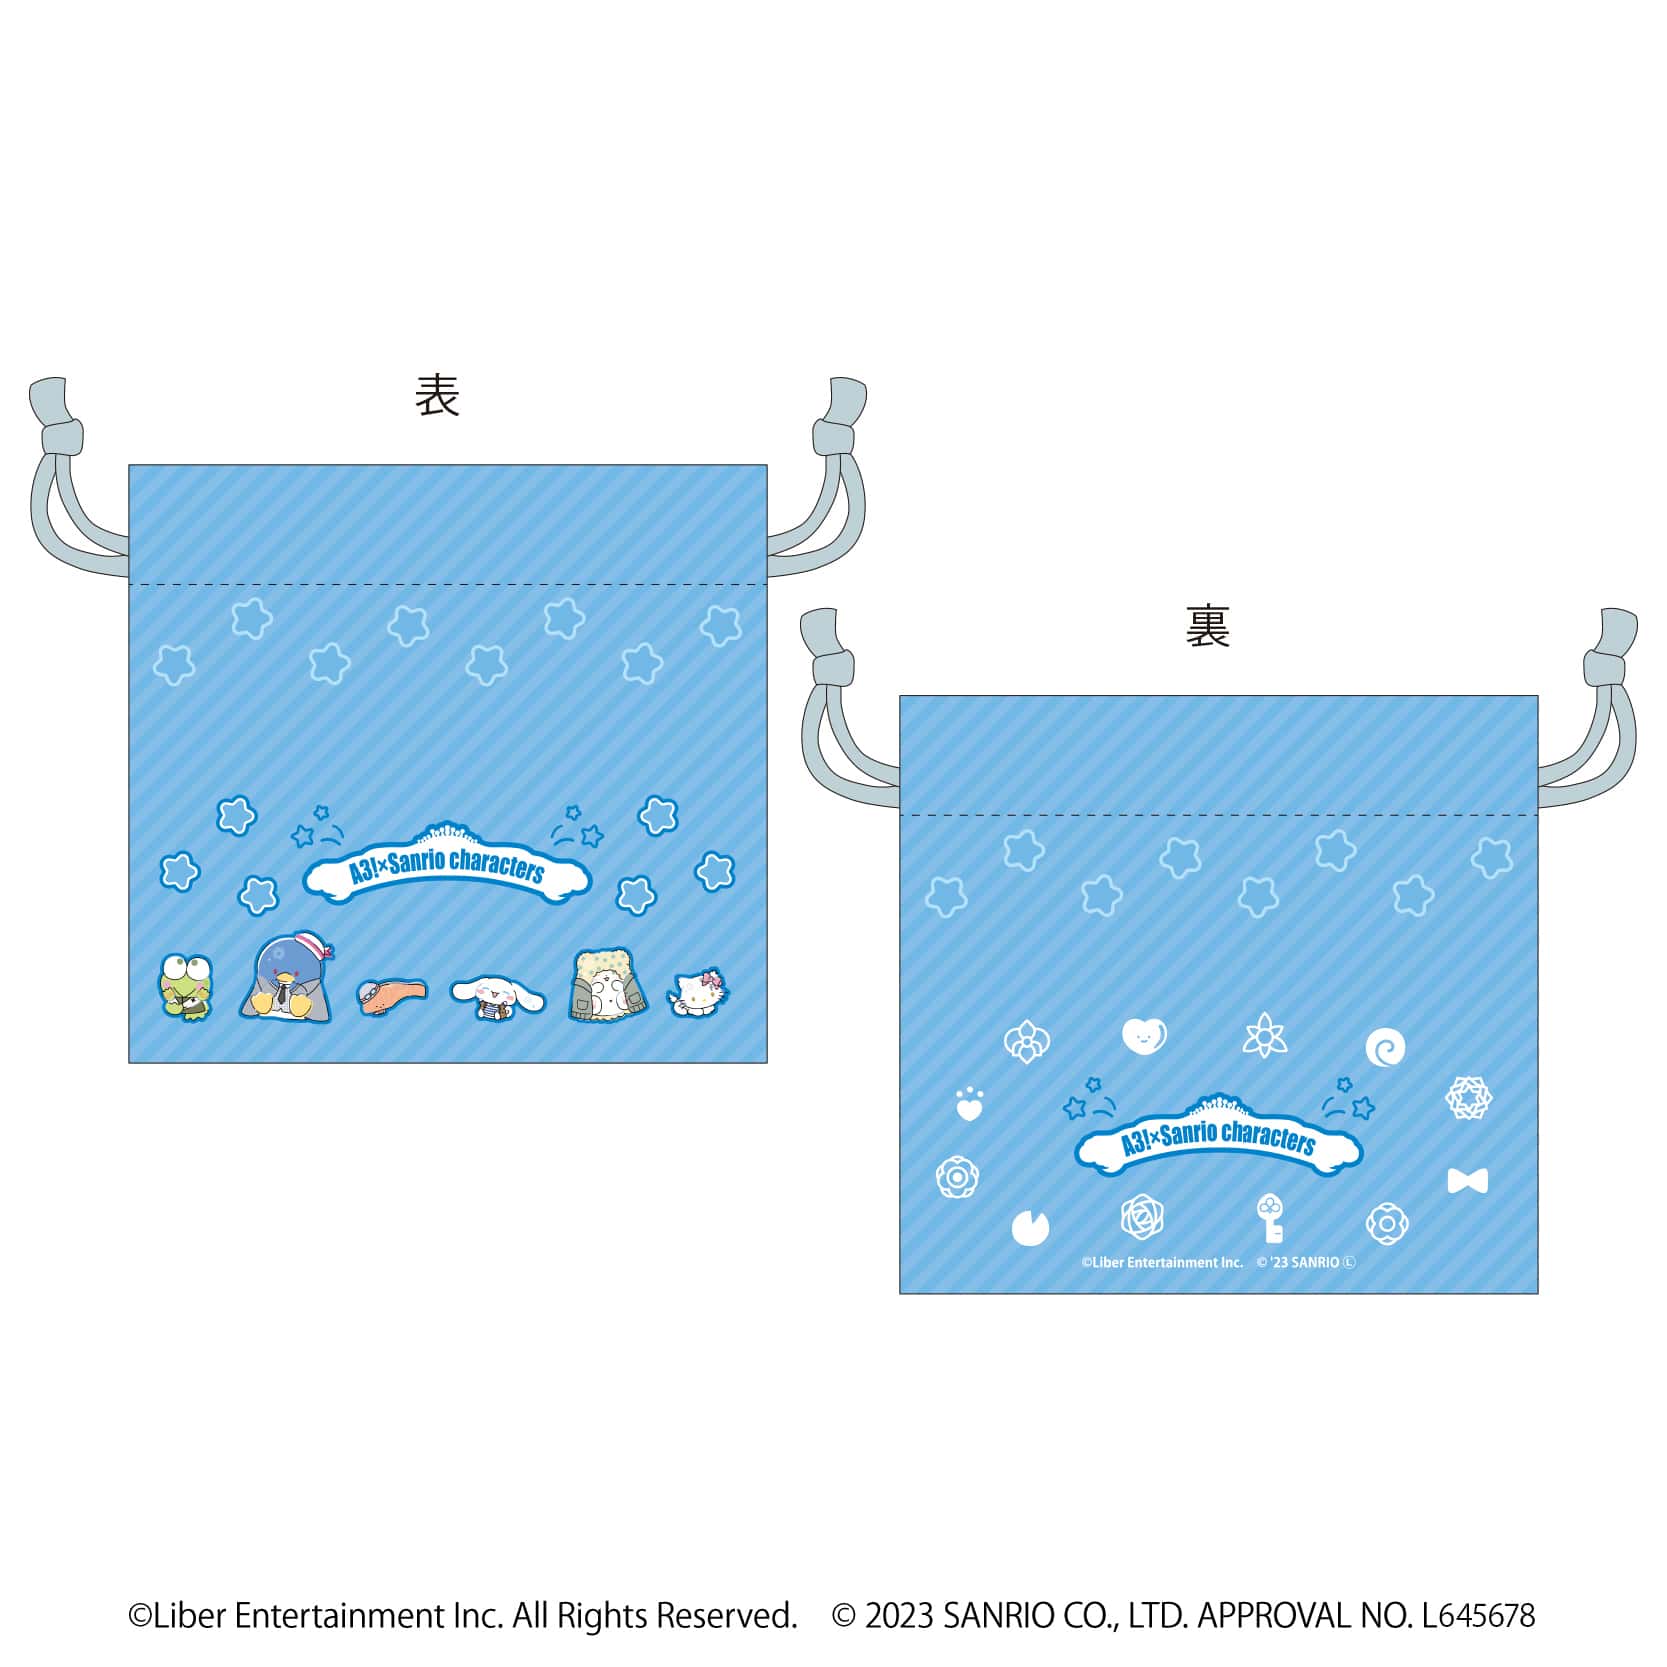 サテン生地巾着「A3!×Sanrio characters」04/冬組 整列デザイン(ミニキャライラスト)